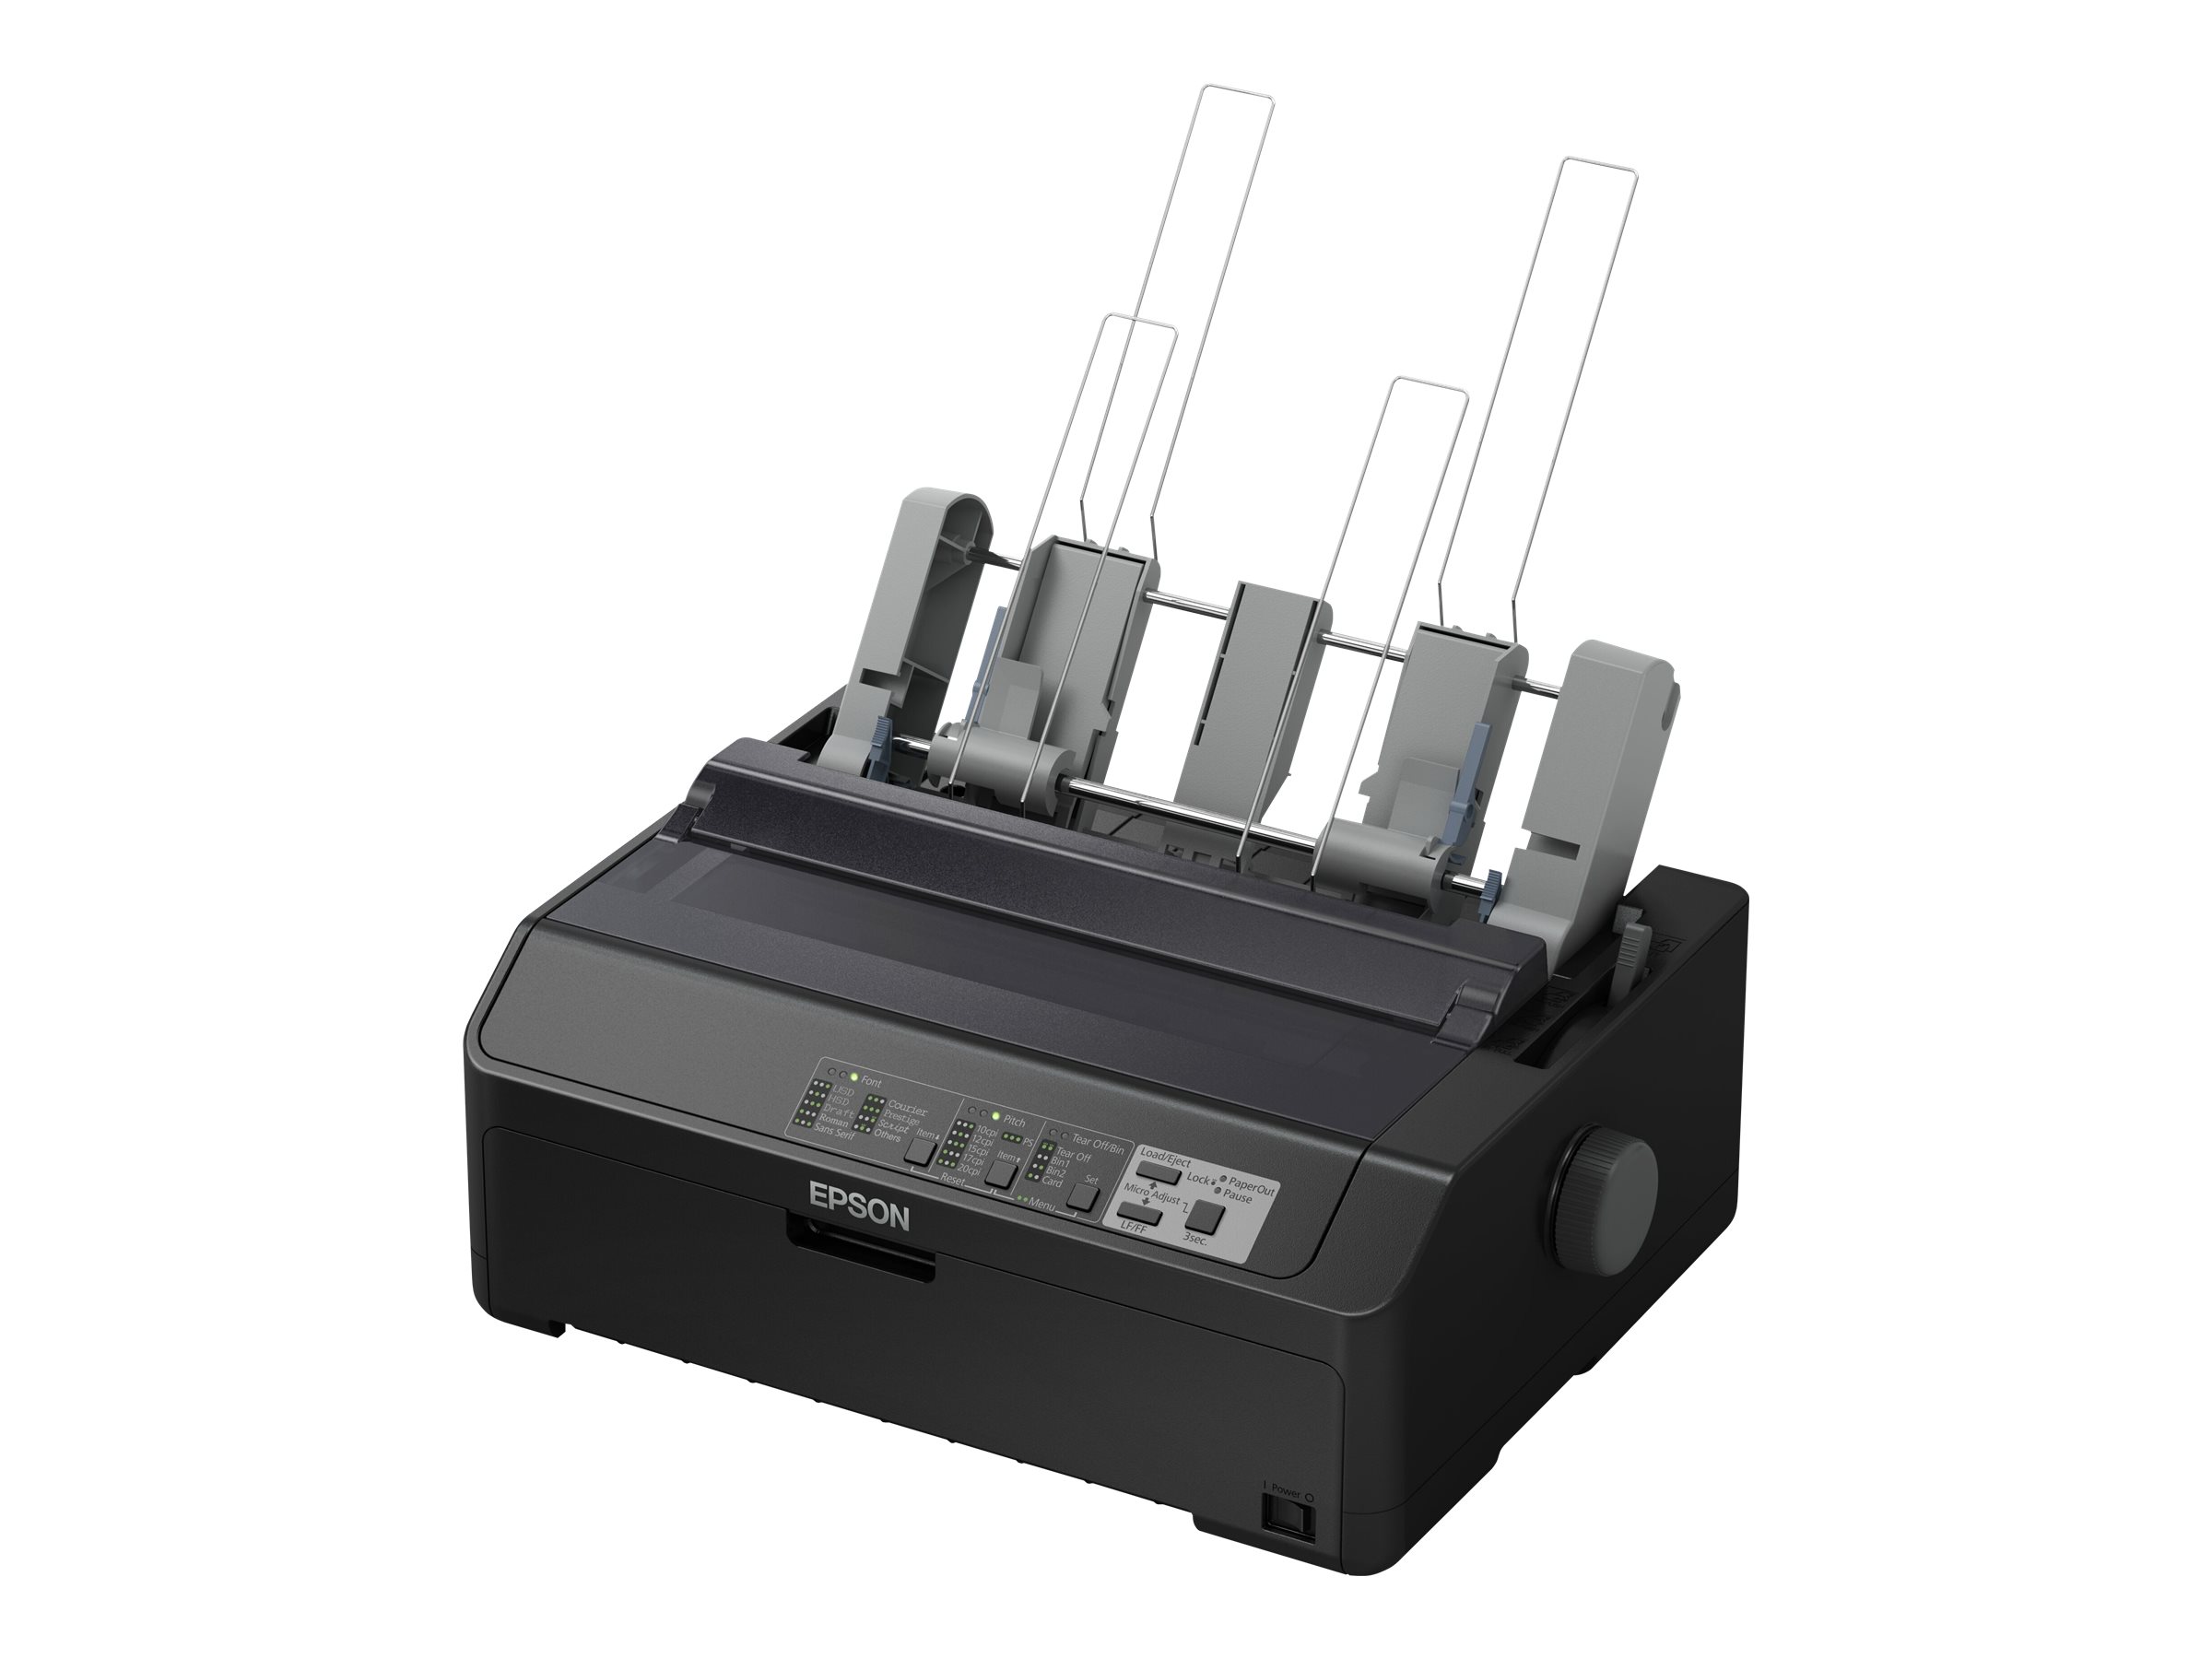 Epson LQ 590II - Drucker - s/w - Punktmatrix - Rolle (21,6 cm), JIS B4, 254 mm (Breite) - 360 x 180 dpi - 24 Pin - bis zu 584 Zeichen/Sek. - parallel, USB 2.0